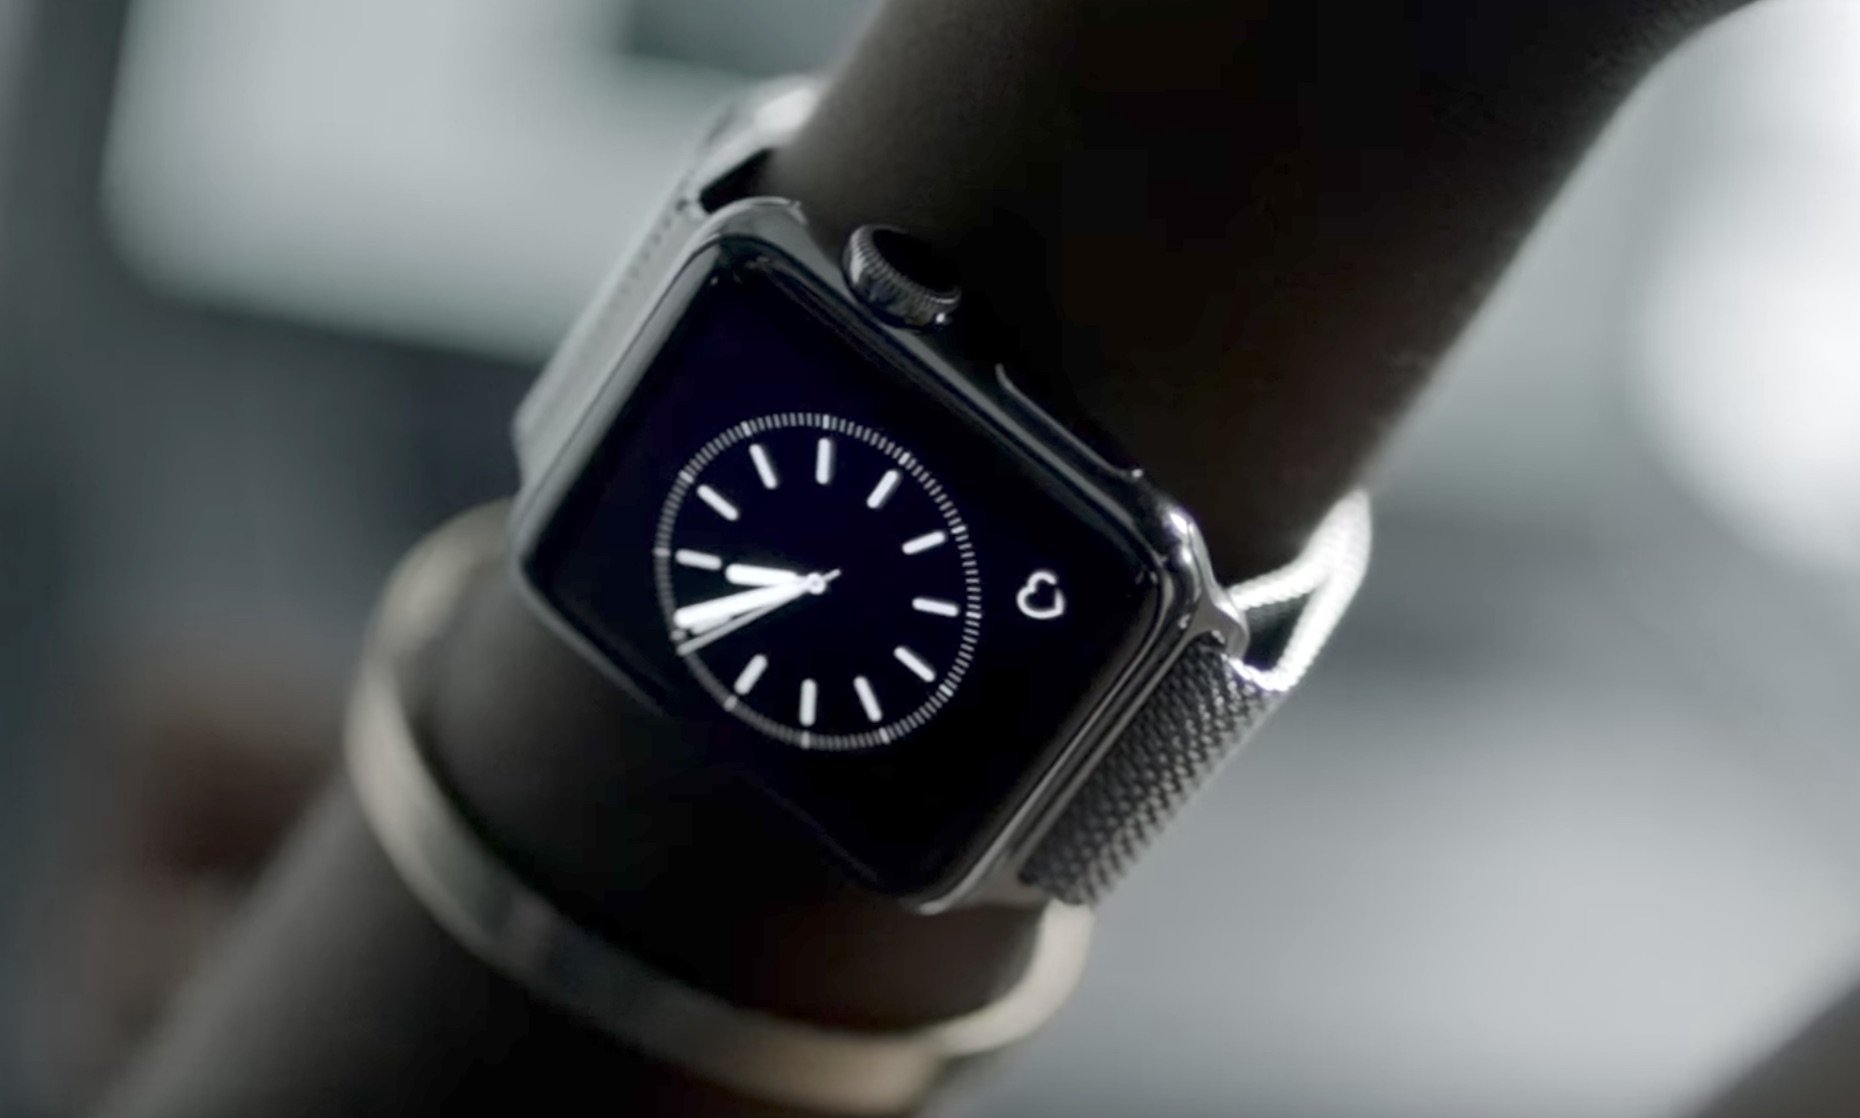 Apple Watch Bands: Nike kündigt neue Modelle mit passenden Schuhen an 2